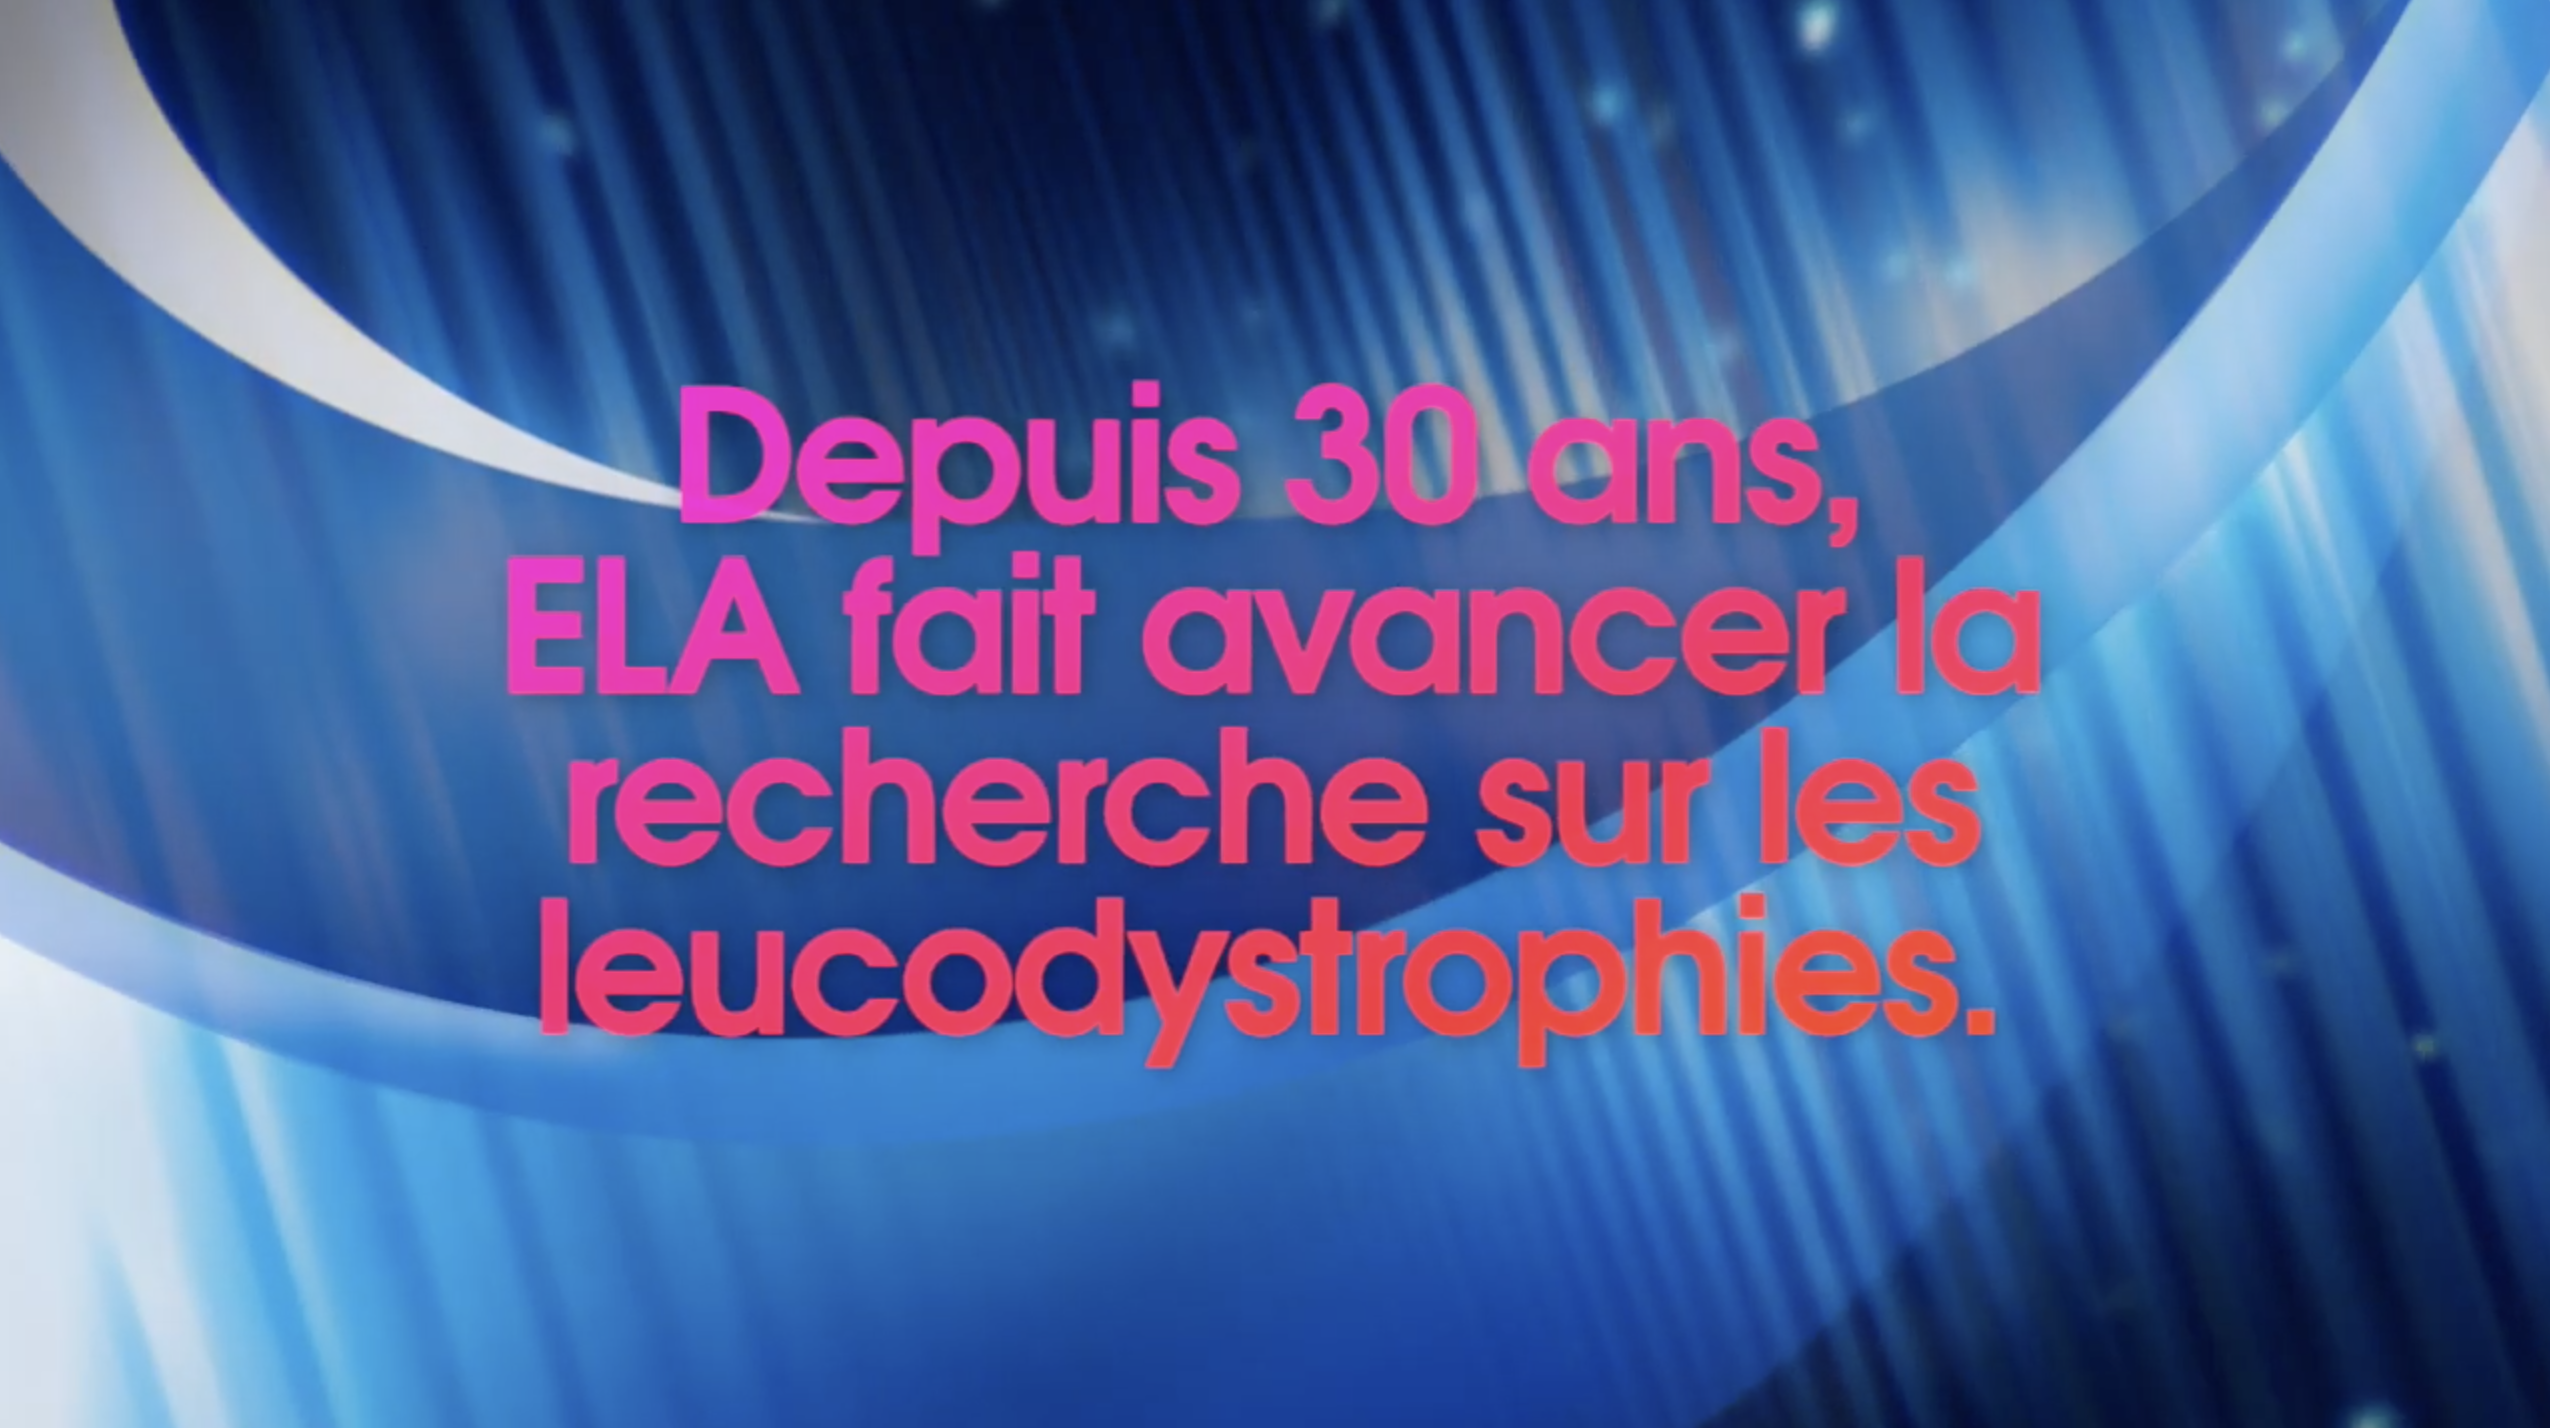 Depuis 30 ans, ELA fait avancer la recherche sur les leucodystrophies